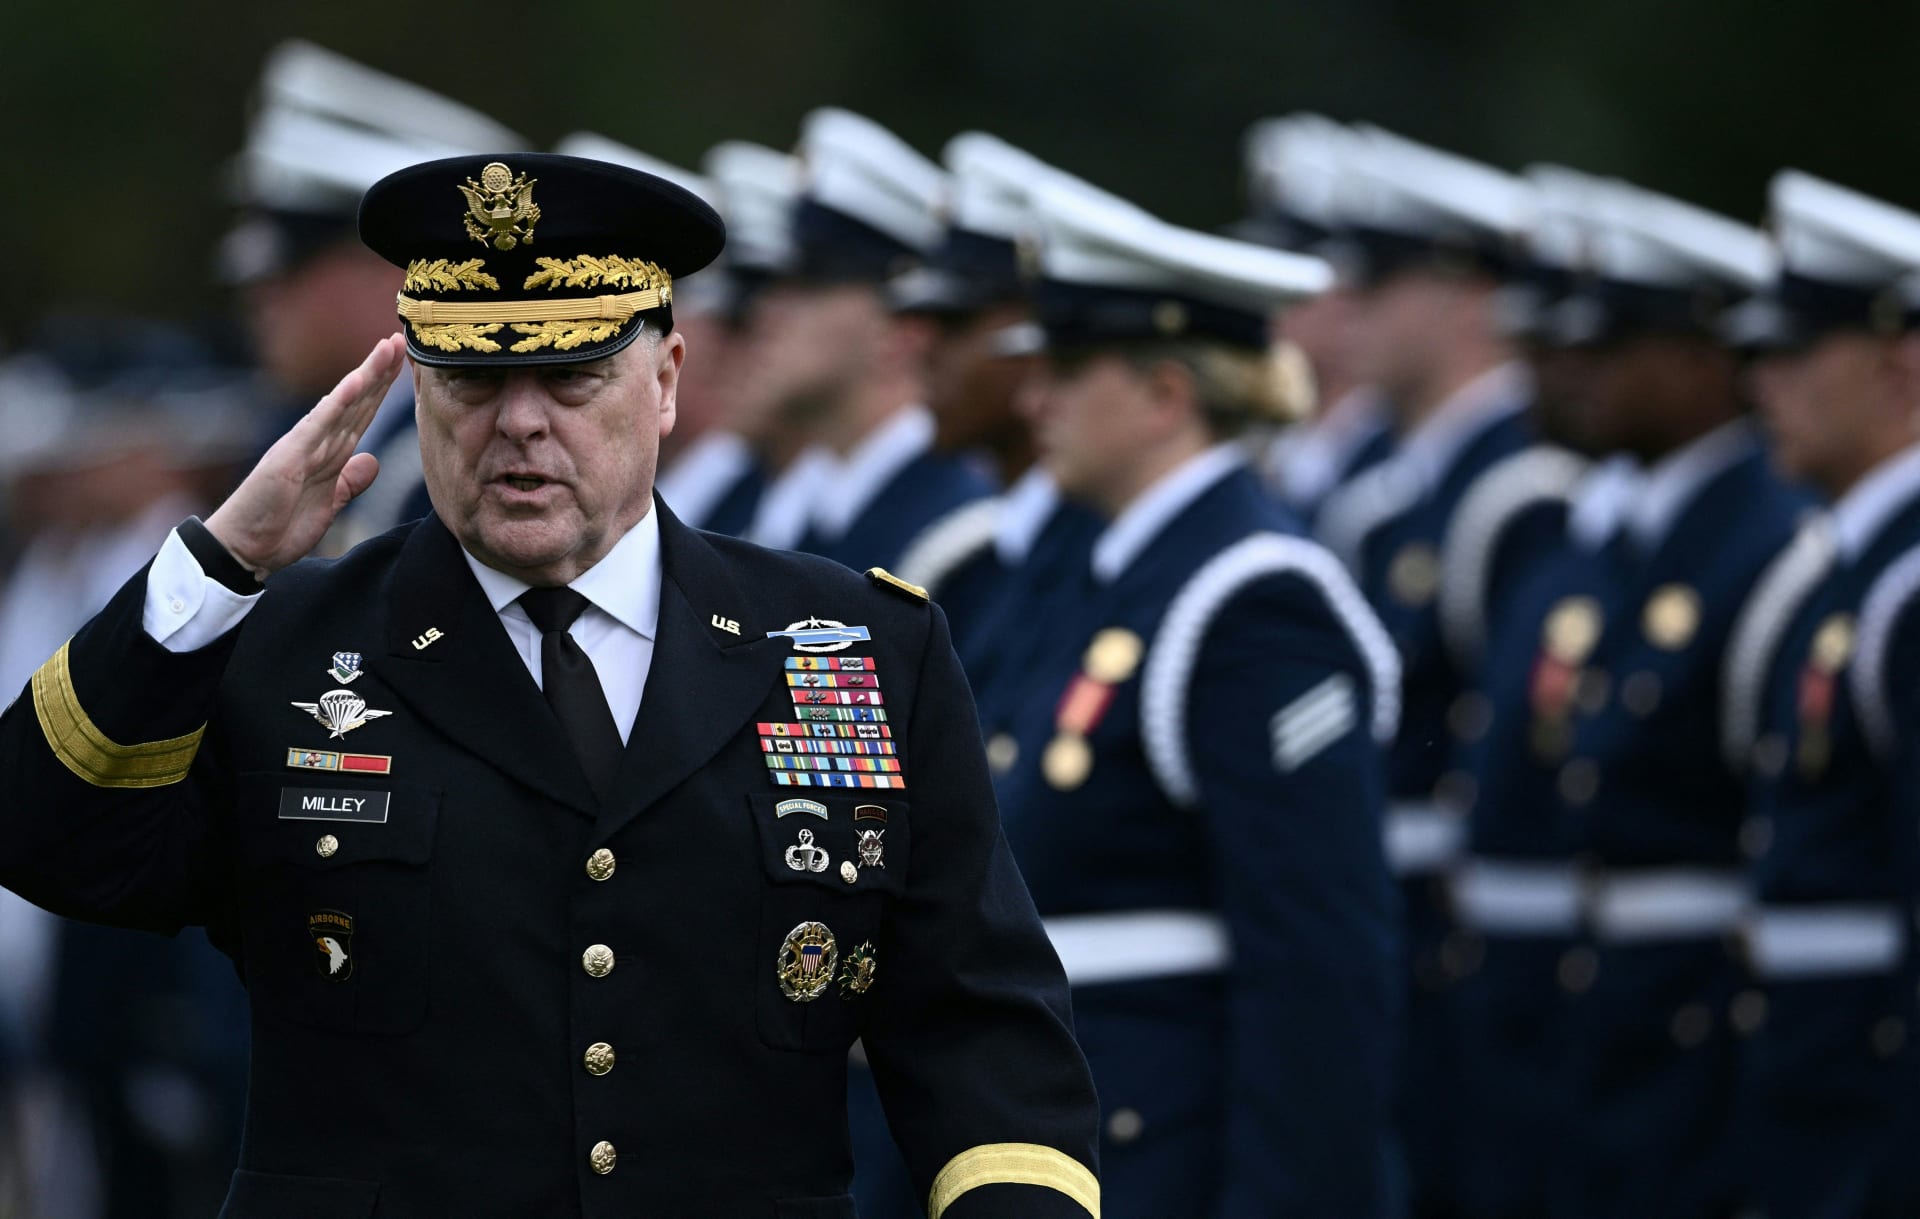 الجنرال مارك ميلي منتقدا ترامب: الجيش الأمريكي لا يؤدي اليمين أمام دكتاتور